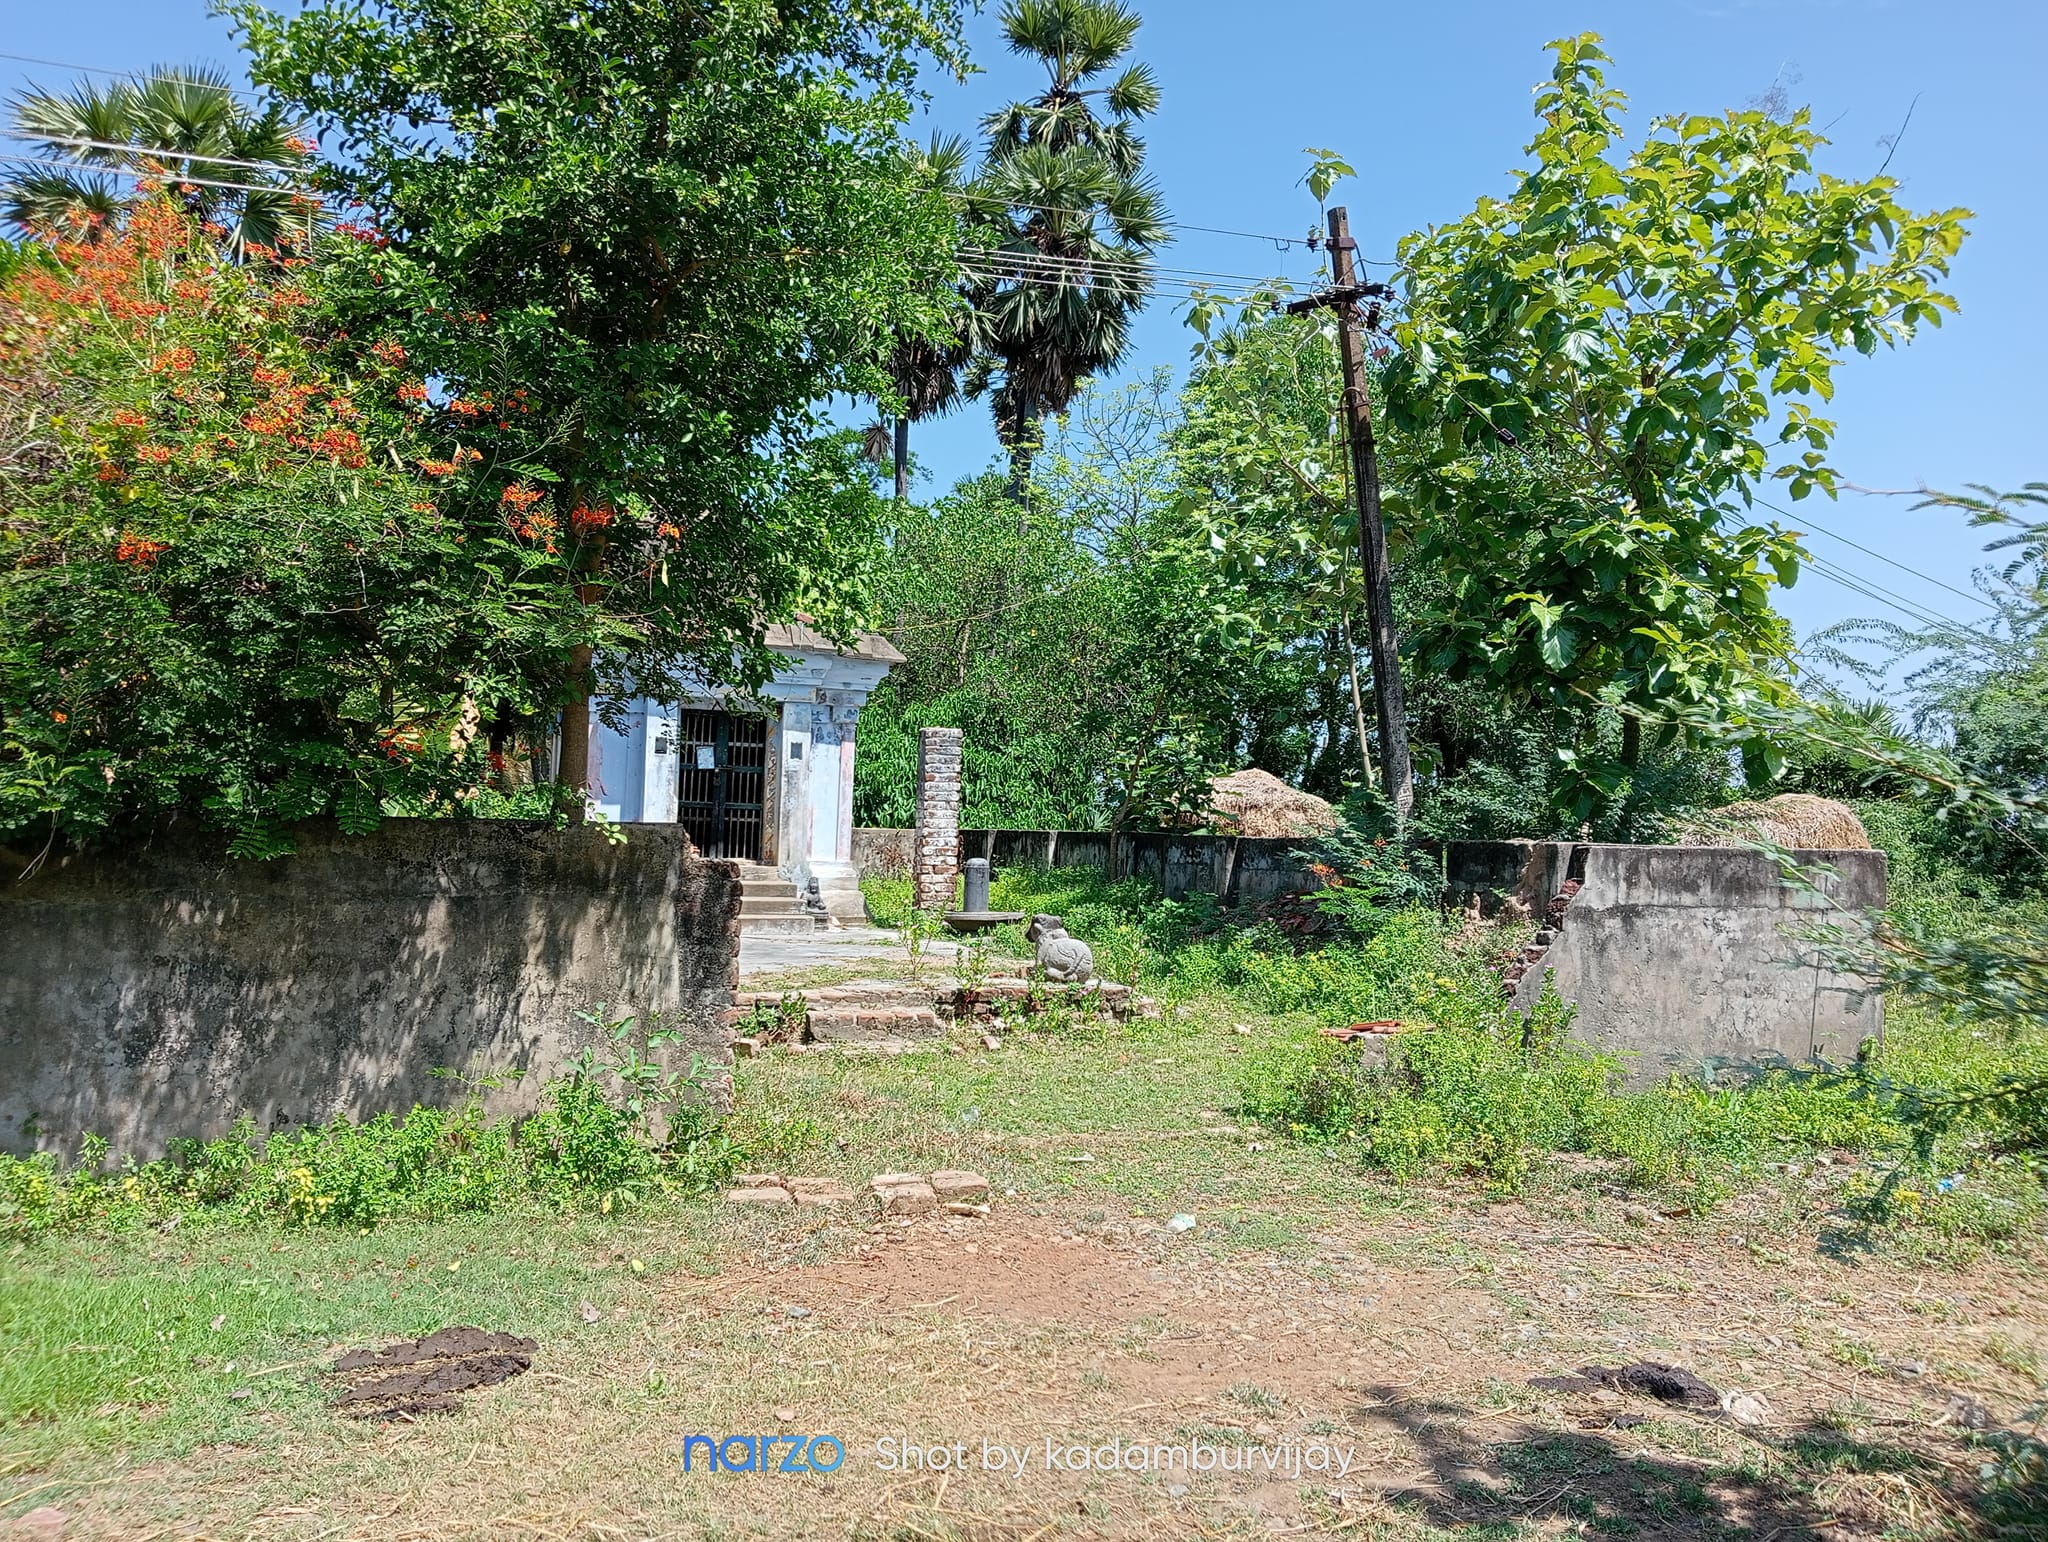 வேளாகுடி சிவன் கோயில், திருவாரூர்